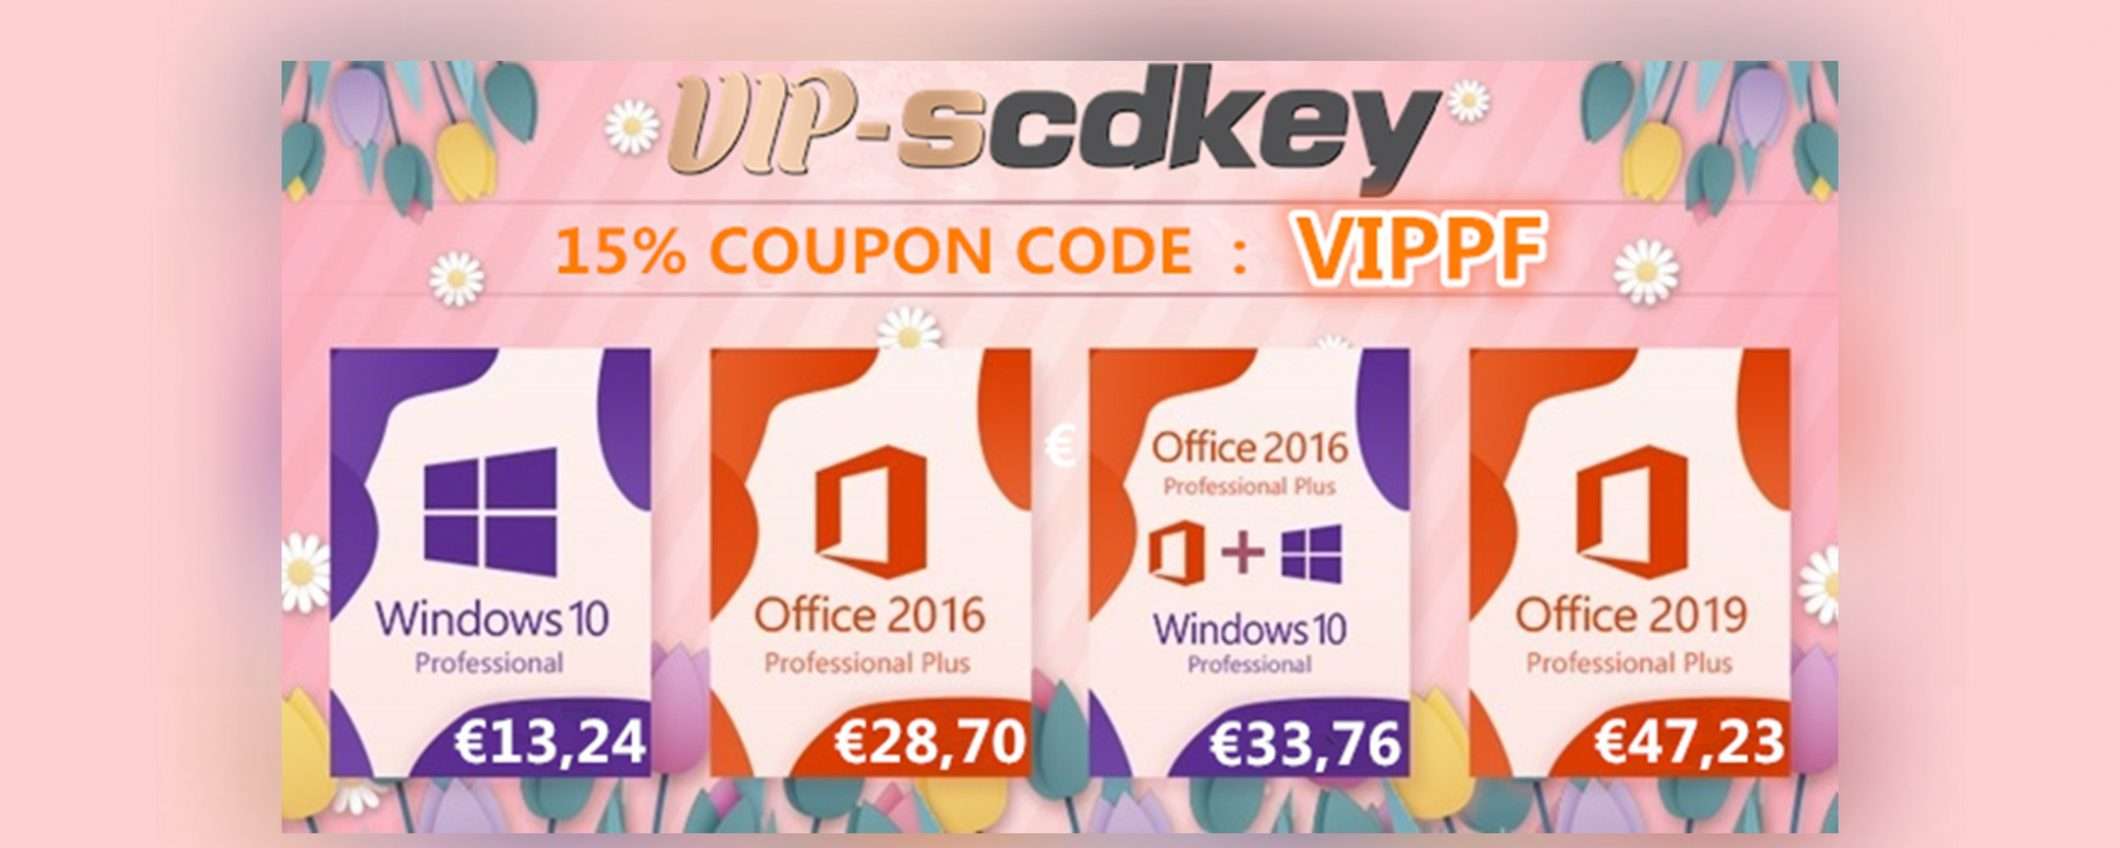 VIP-SCDKey, è primavera: Windows 10 PRO €13, Office 2016 €28